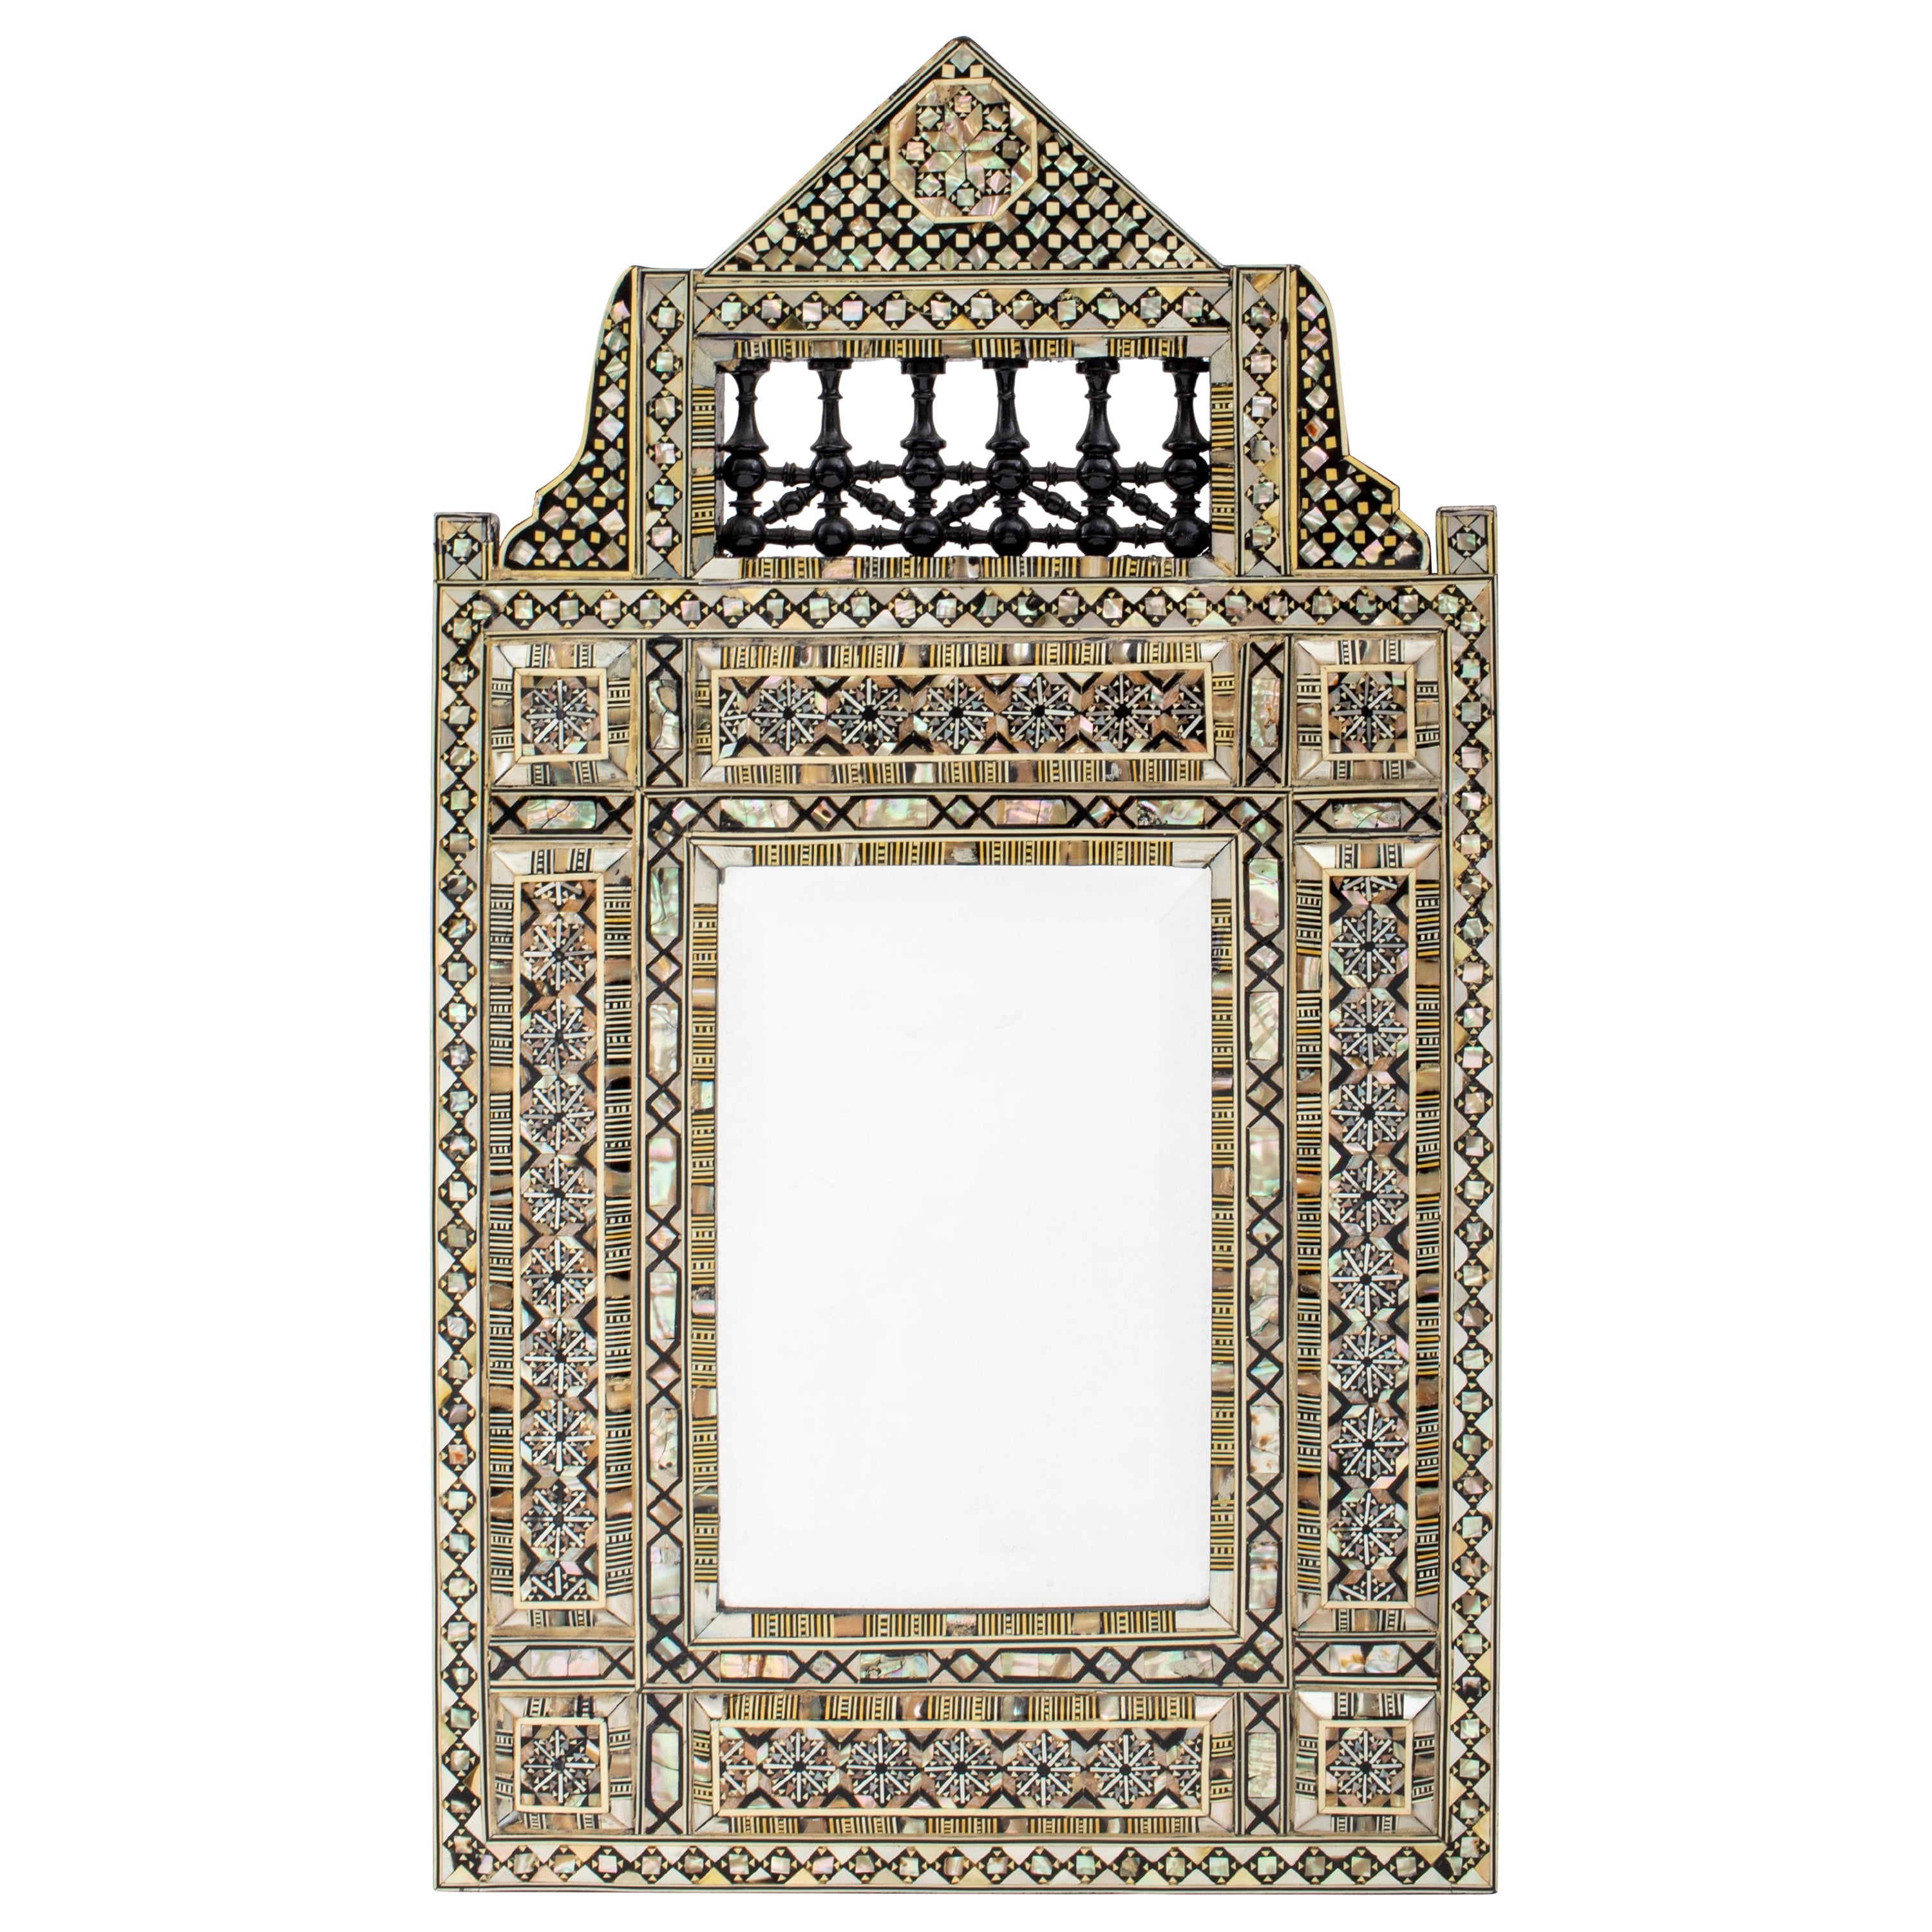 Spiegel aus perlmuttfarbenem Perlmutt und Ebenholz mit Intarsien